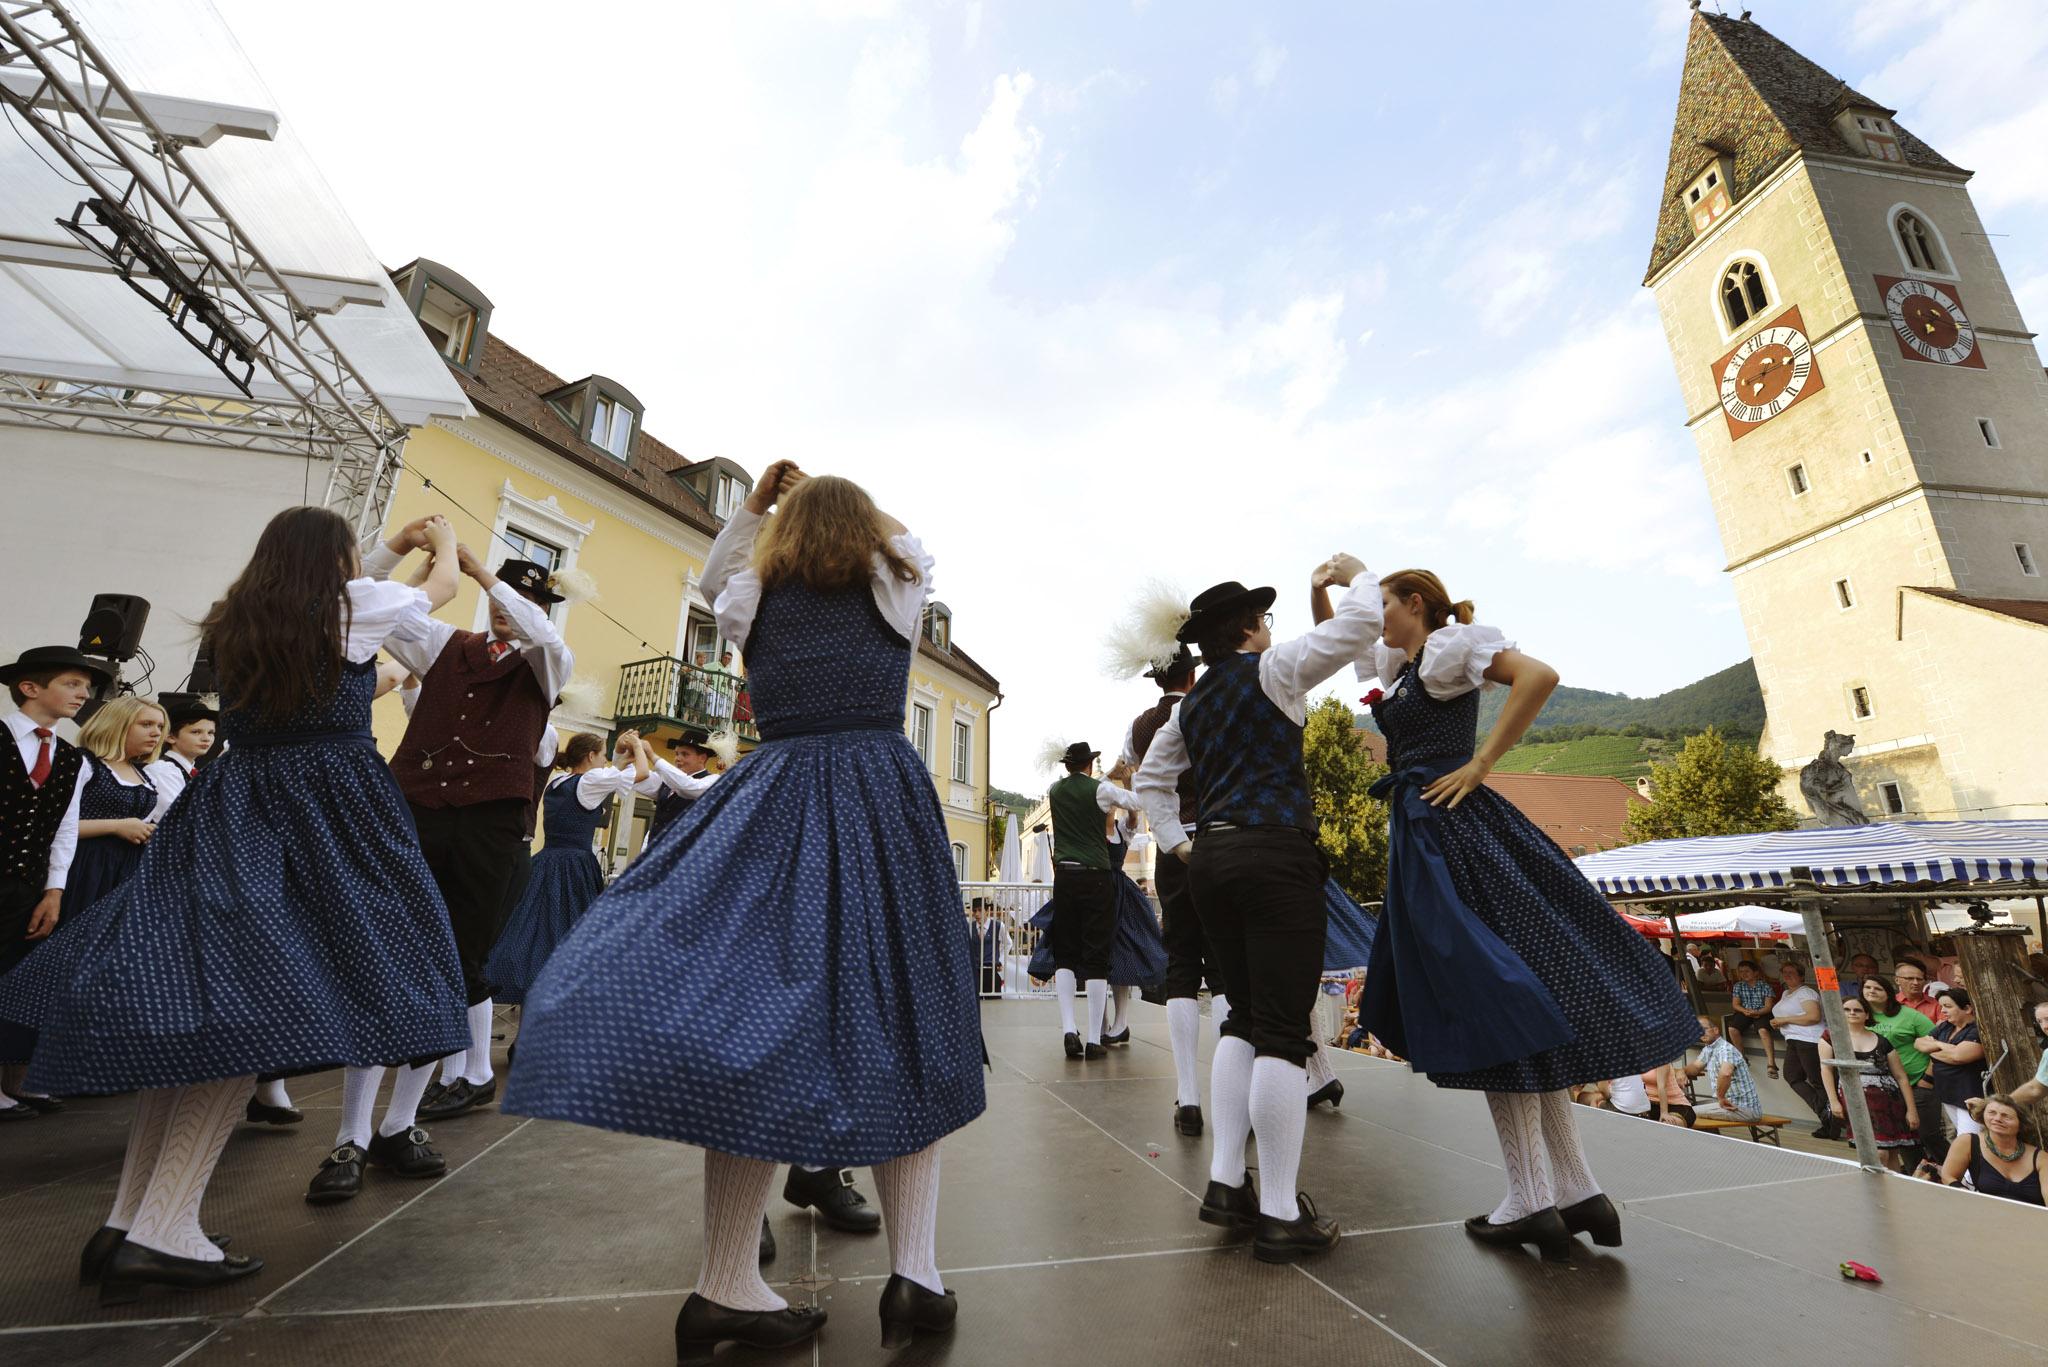 La tradition est transmise de génération en génération à Wachau, où chaque lieu abrite des histoires d'amour et de peines. - © Steve Haider / Donau NÖ